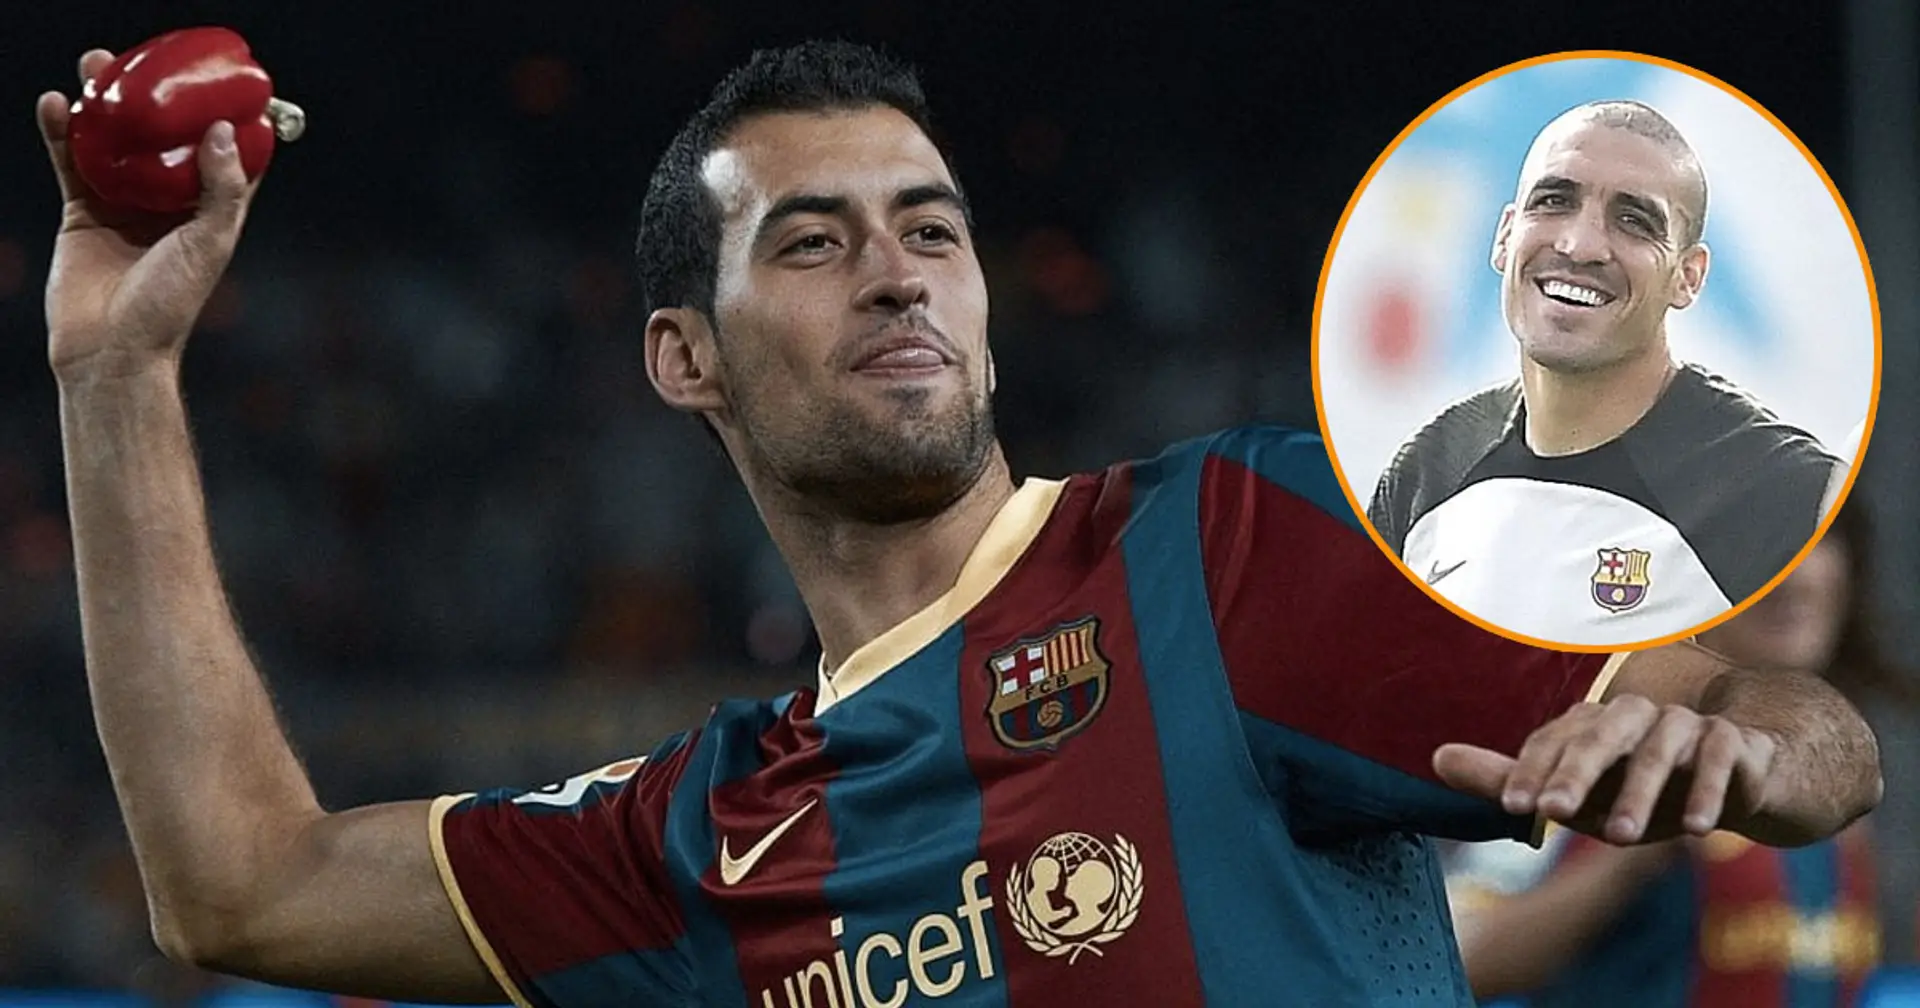 "Je peux le voir jouer comme le meilleur Busi!": Un fan nomme un changement qui peut faire briller Romeu - c'est au conseil d'administration du Barça d'agir